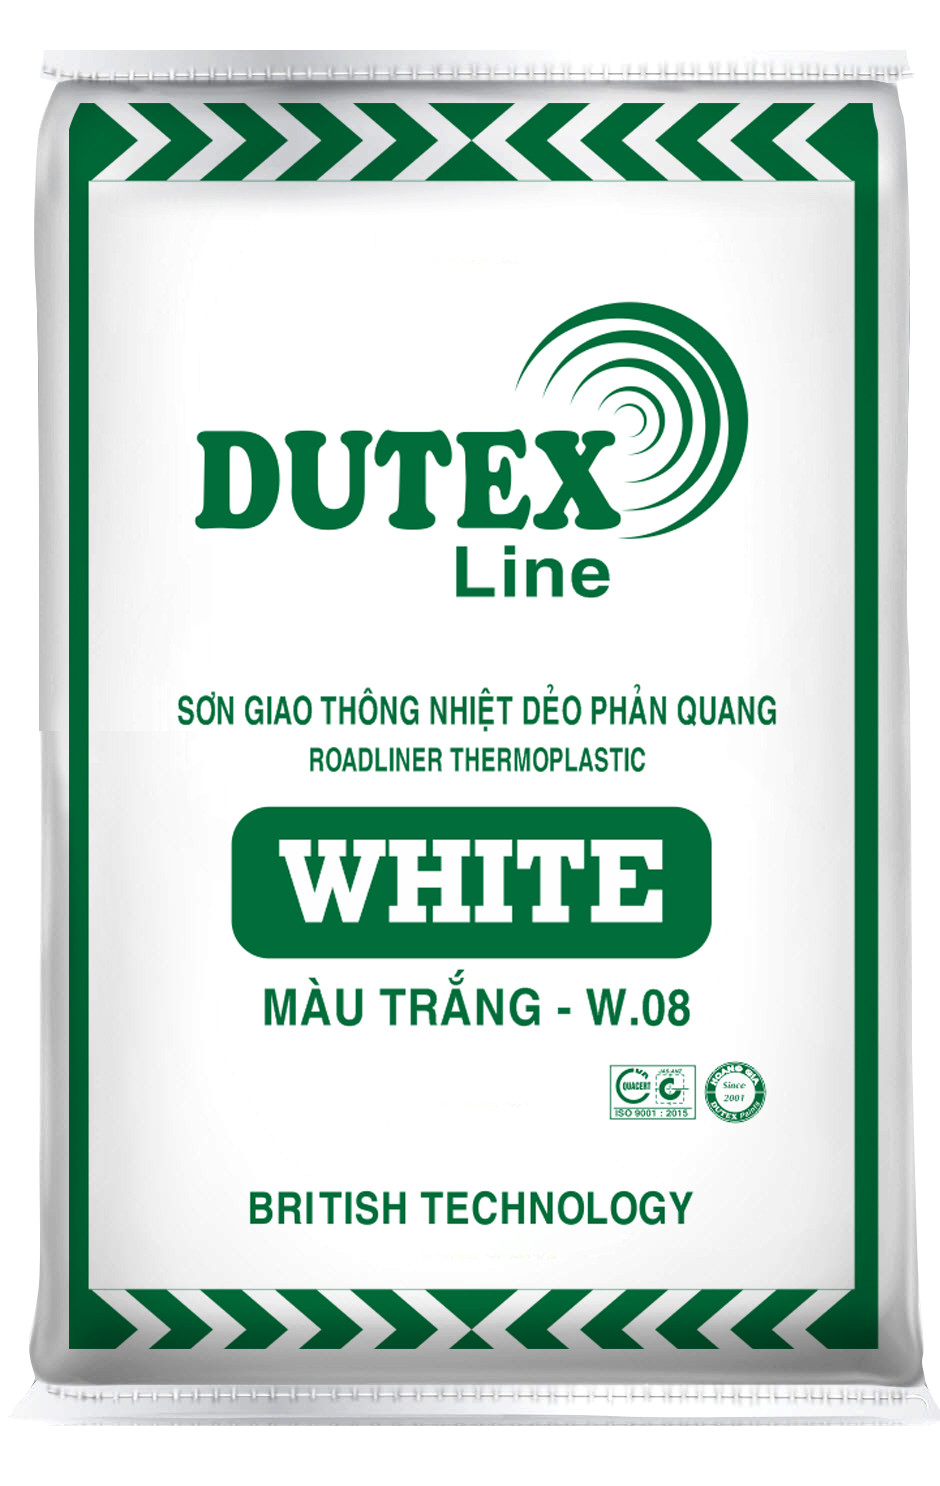 SƠN GIAO THÔNG NHIỆT DẺO PHẢN QUANG DUTEX LINE - WHITE W08